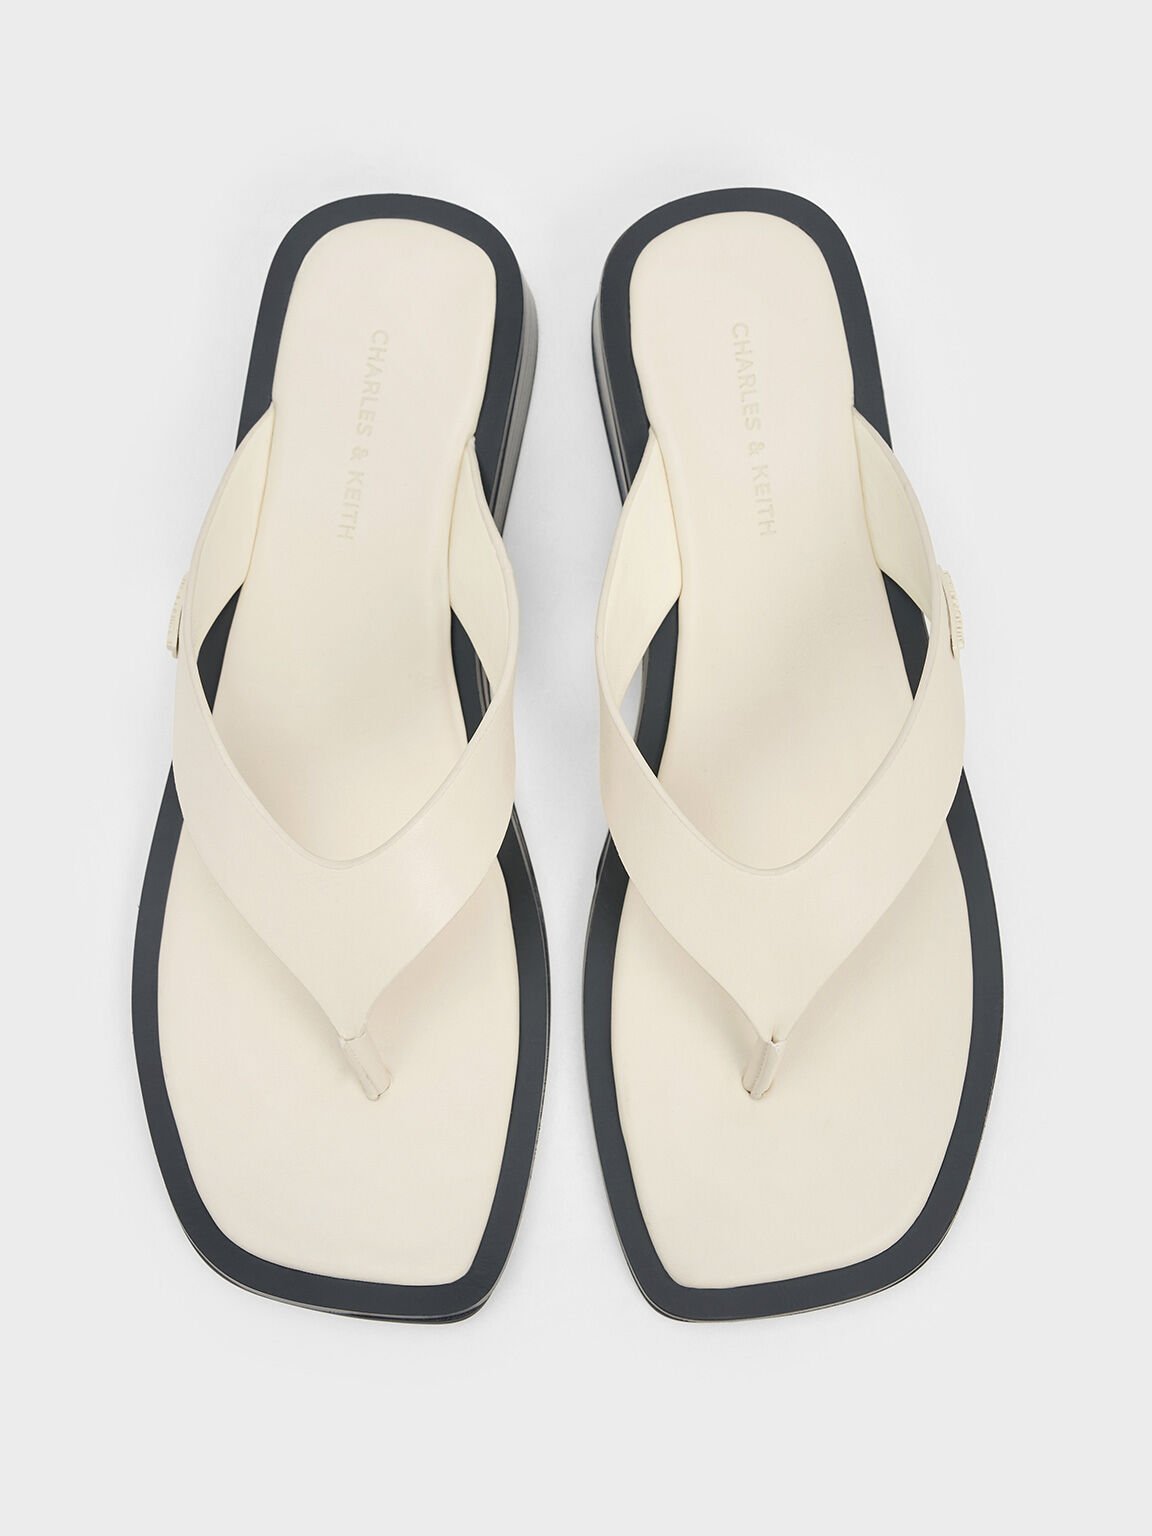 V-Strap Wedge Thong Sandals, Cream, hi-res